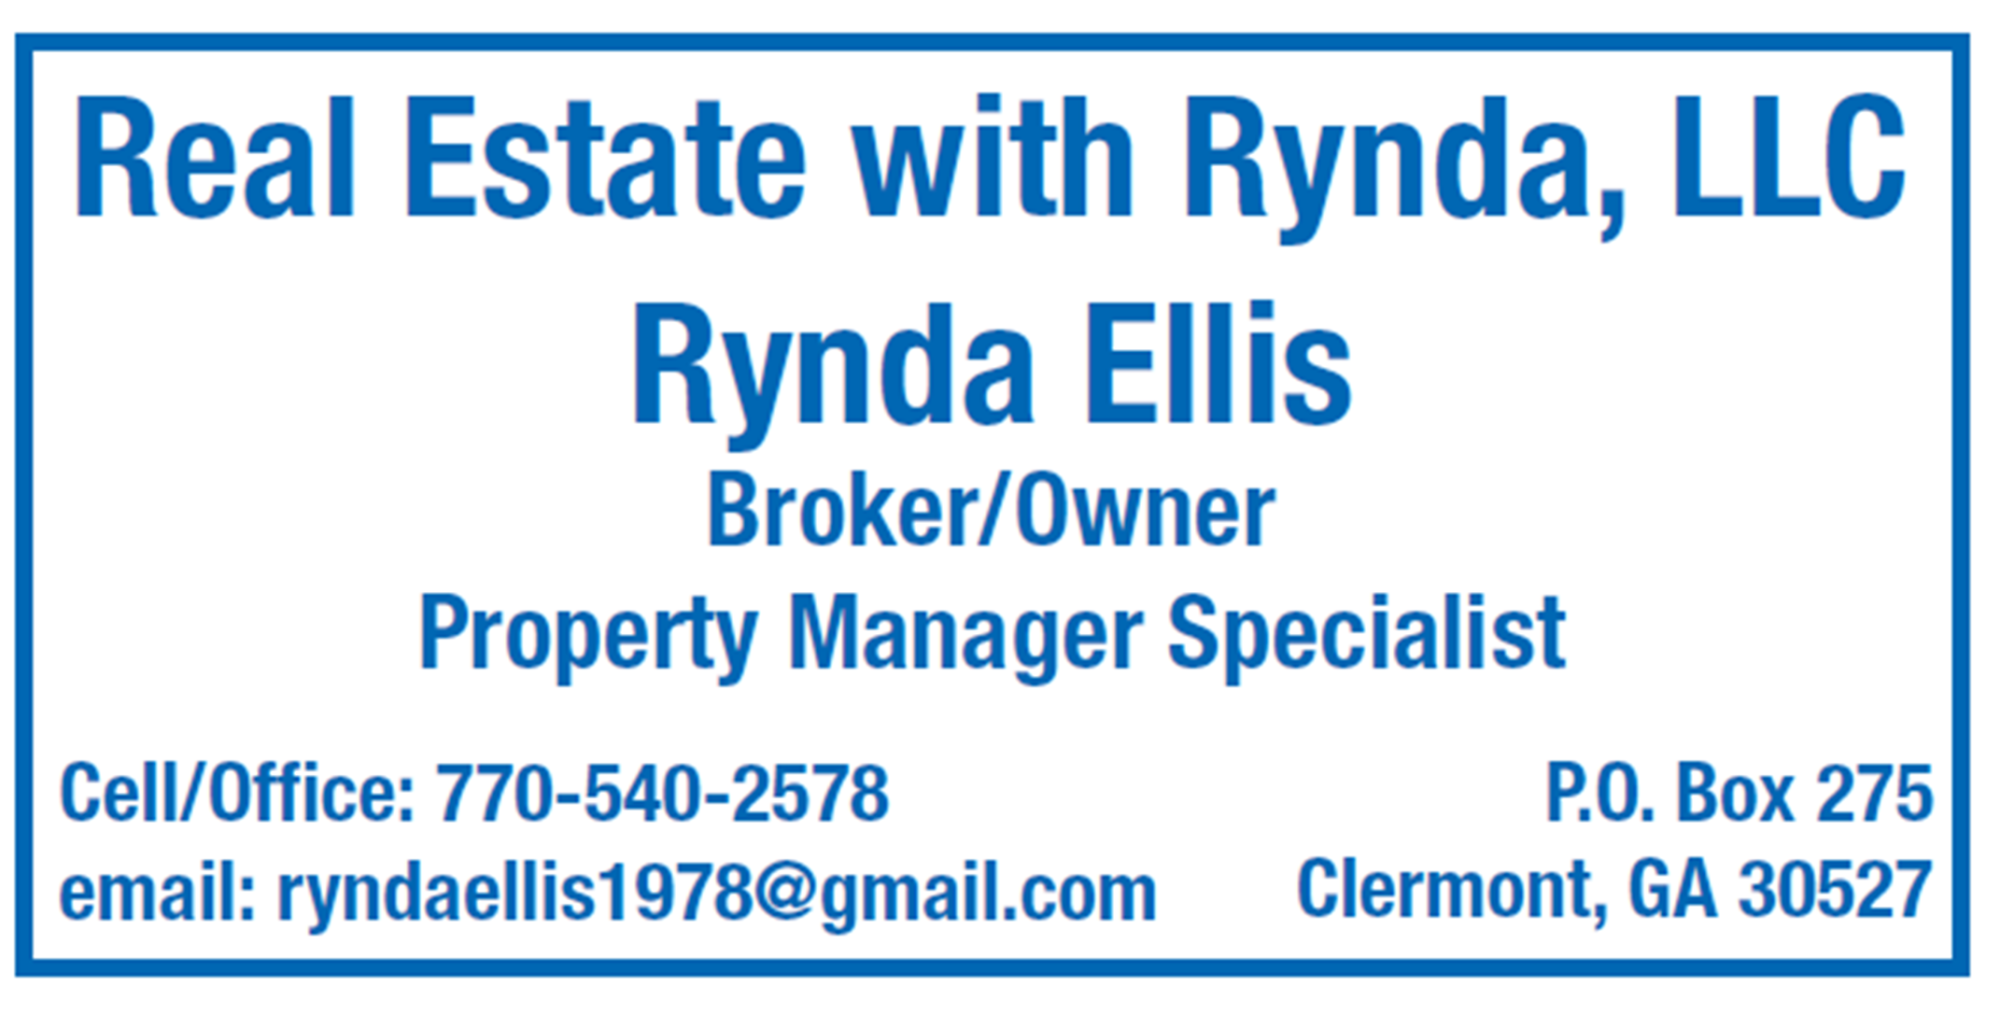 Real Estate with Rynda, LLC